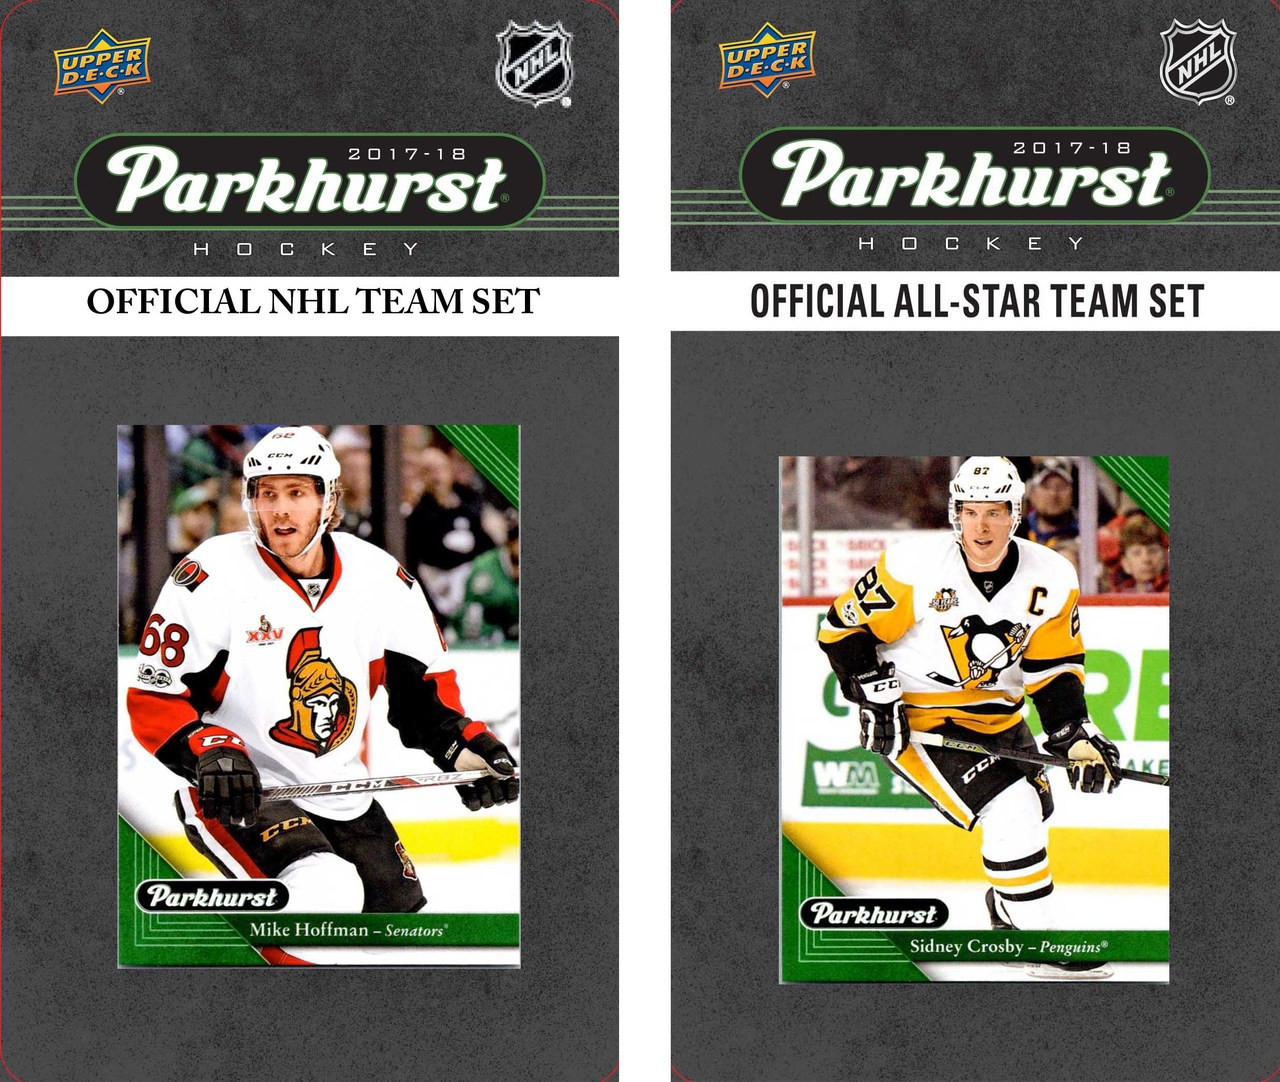 NHL Ottawa Senators 2017 Parkhurst Team Set and All-Star Set